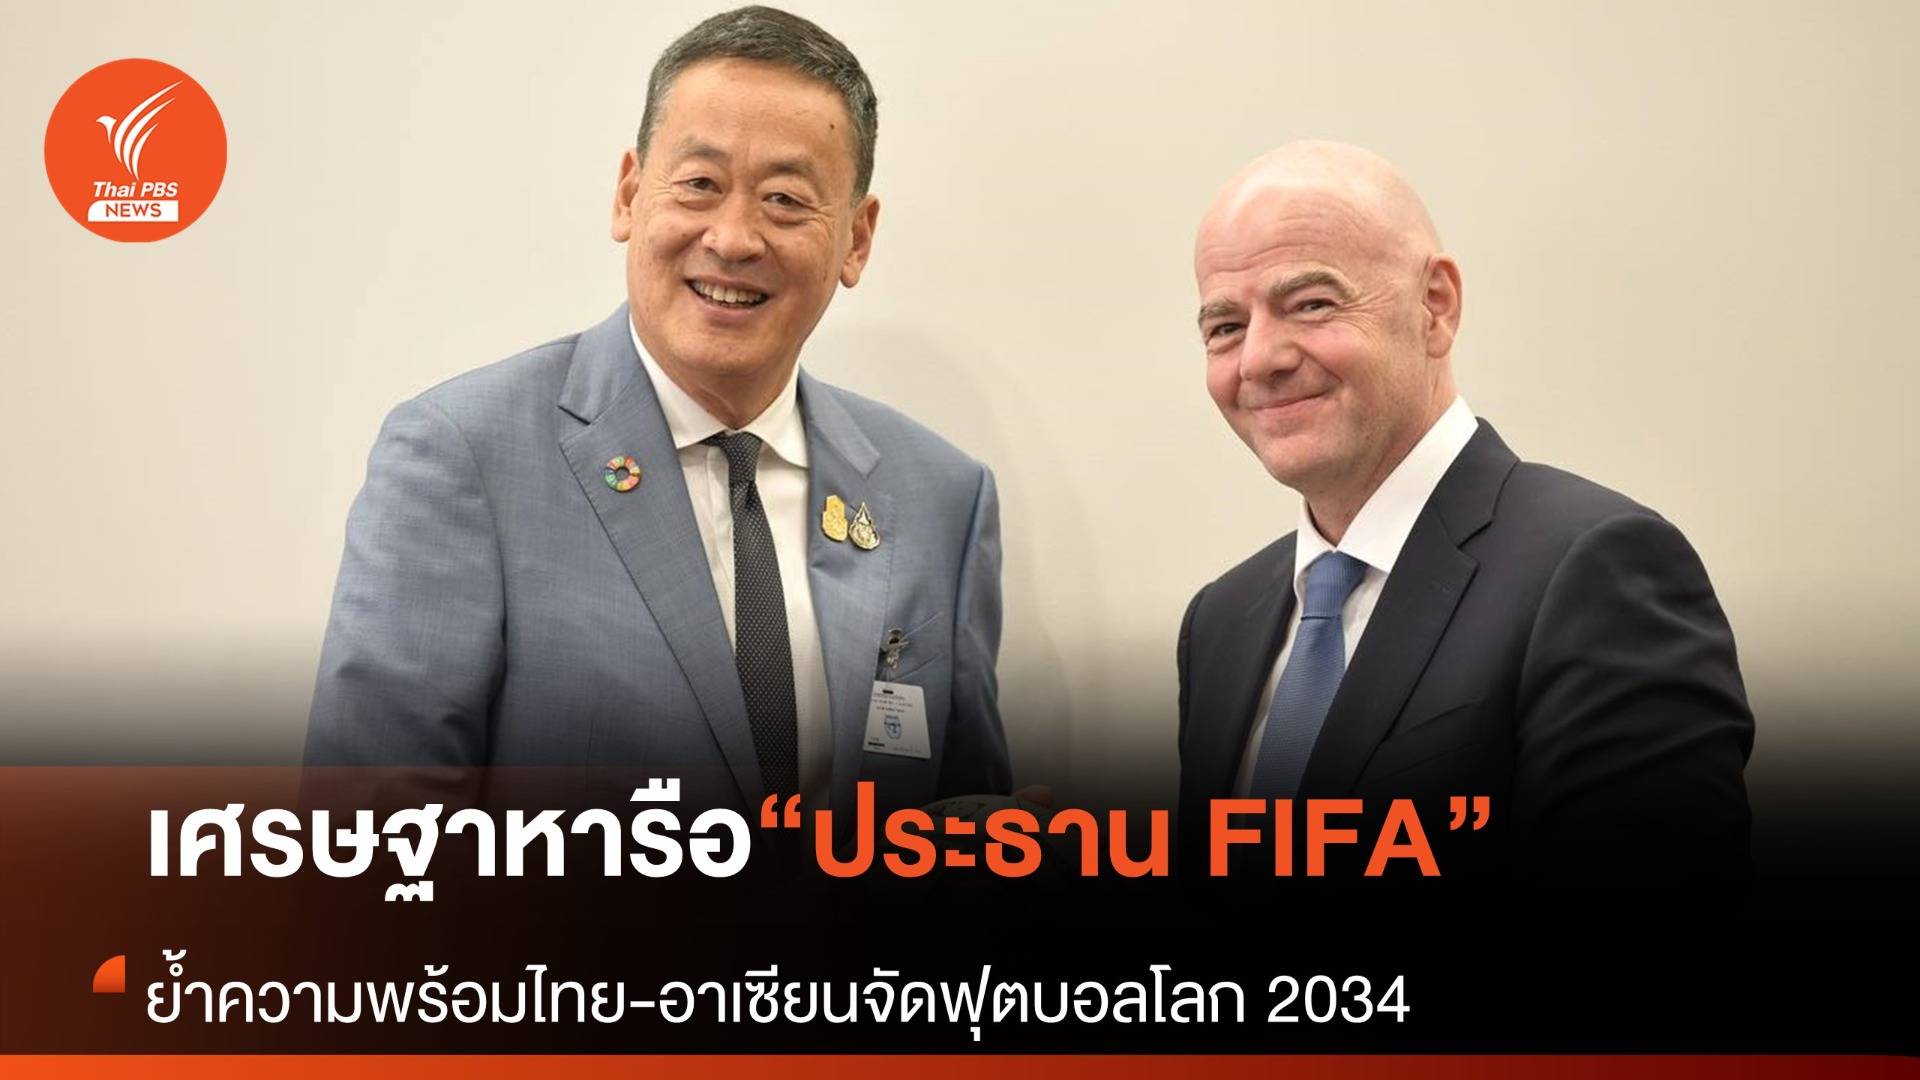 นายกฯ หารือประธาน FIFA ย้ำความพร้อมไทย-อาเซียน เสนอเป็นเจ้าภาพฟุตบอลโลก 2034